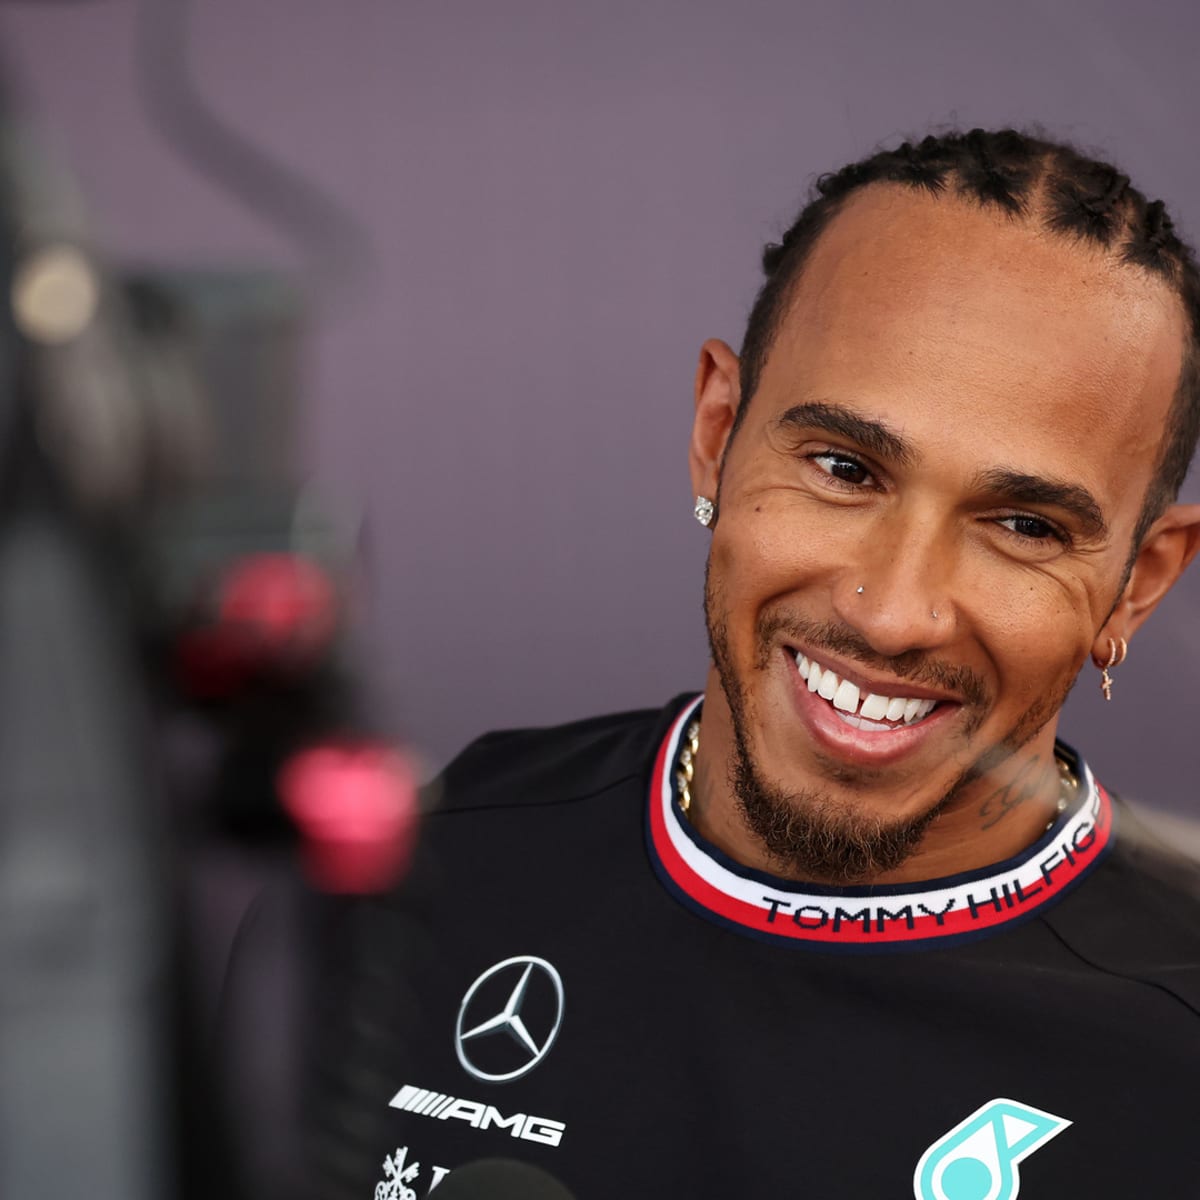 Lewis Hamilton proche d'un transfert surprise chez Ferrari